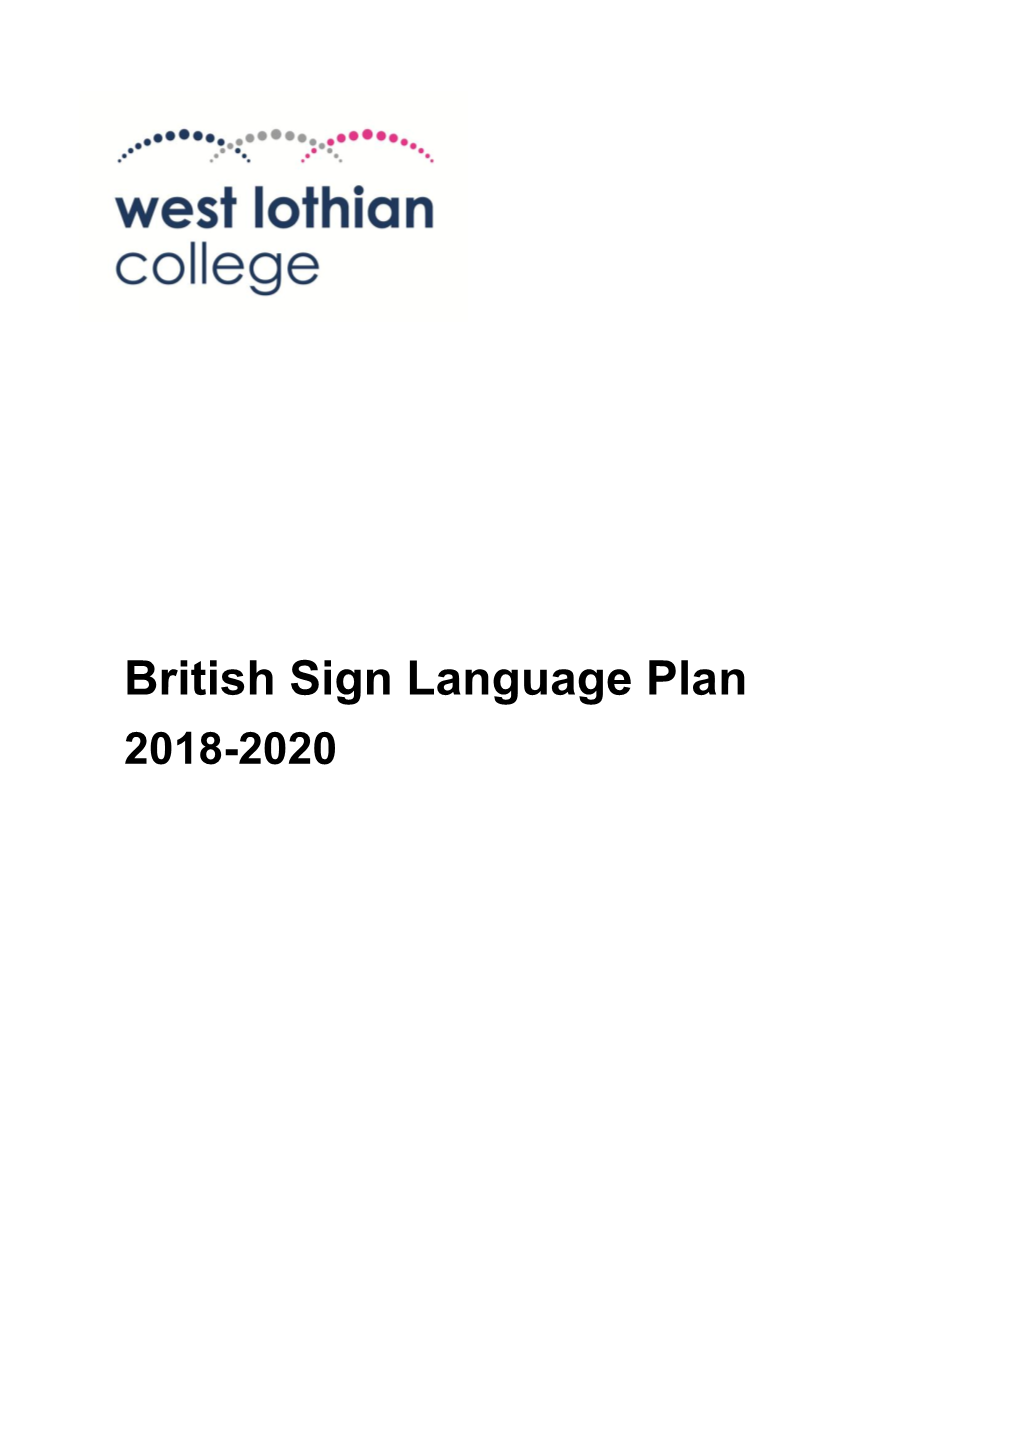 British Sign Language Plan 2018-2020